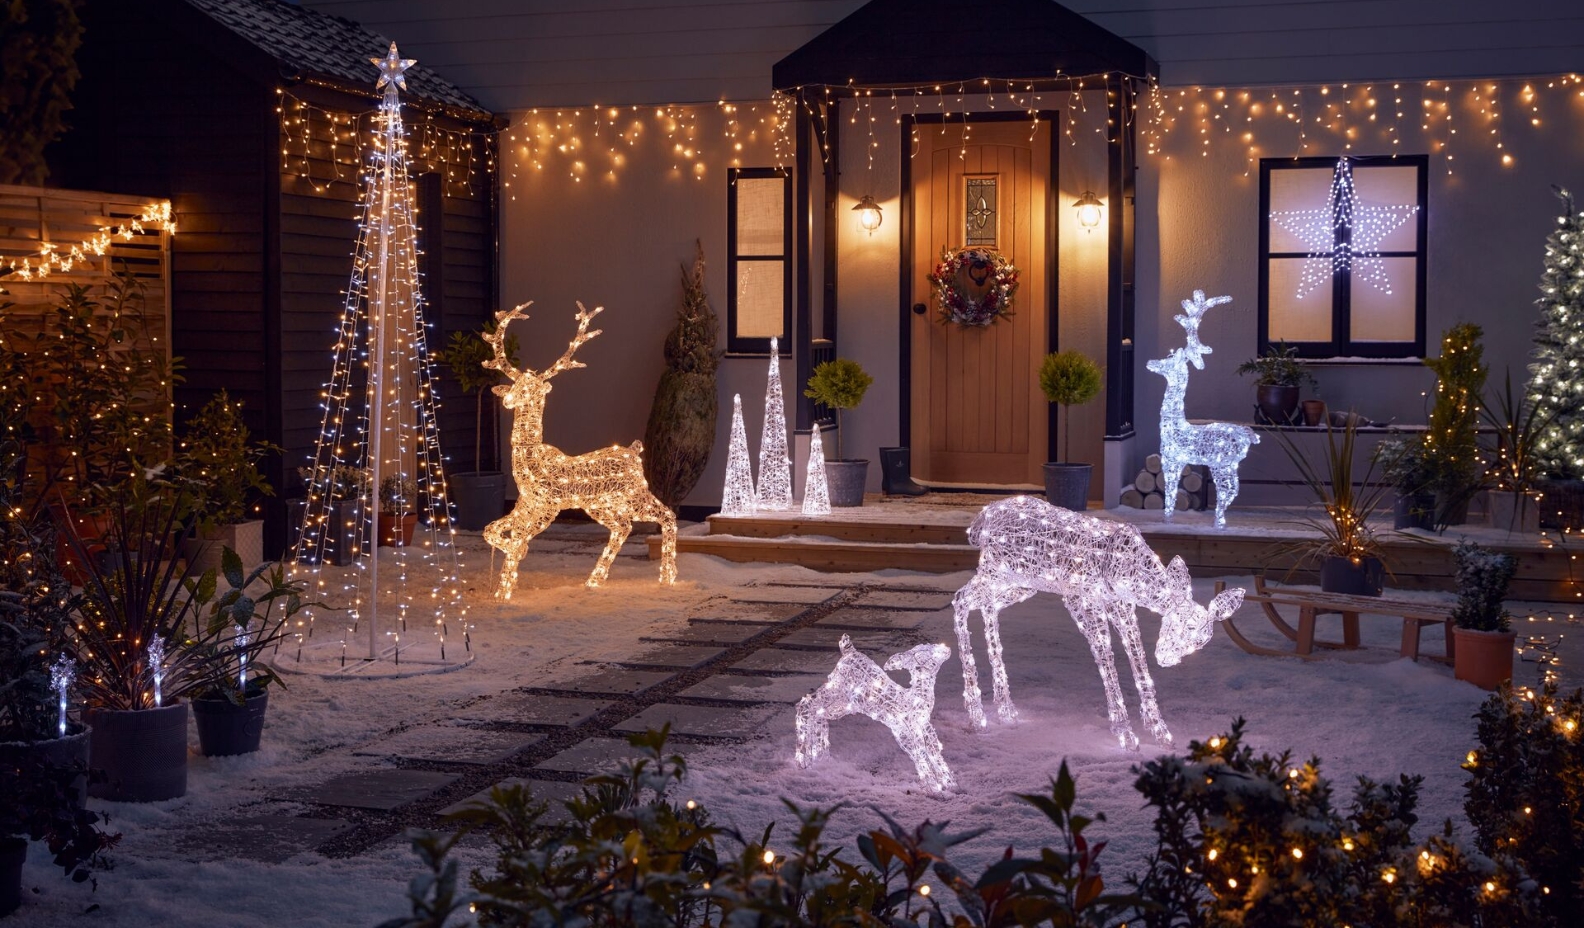 Outdoor Christmas lighting ideas